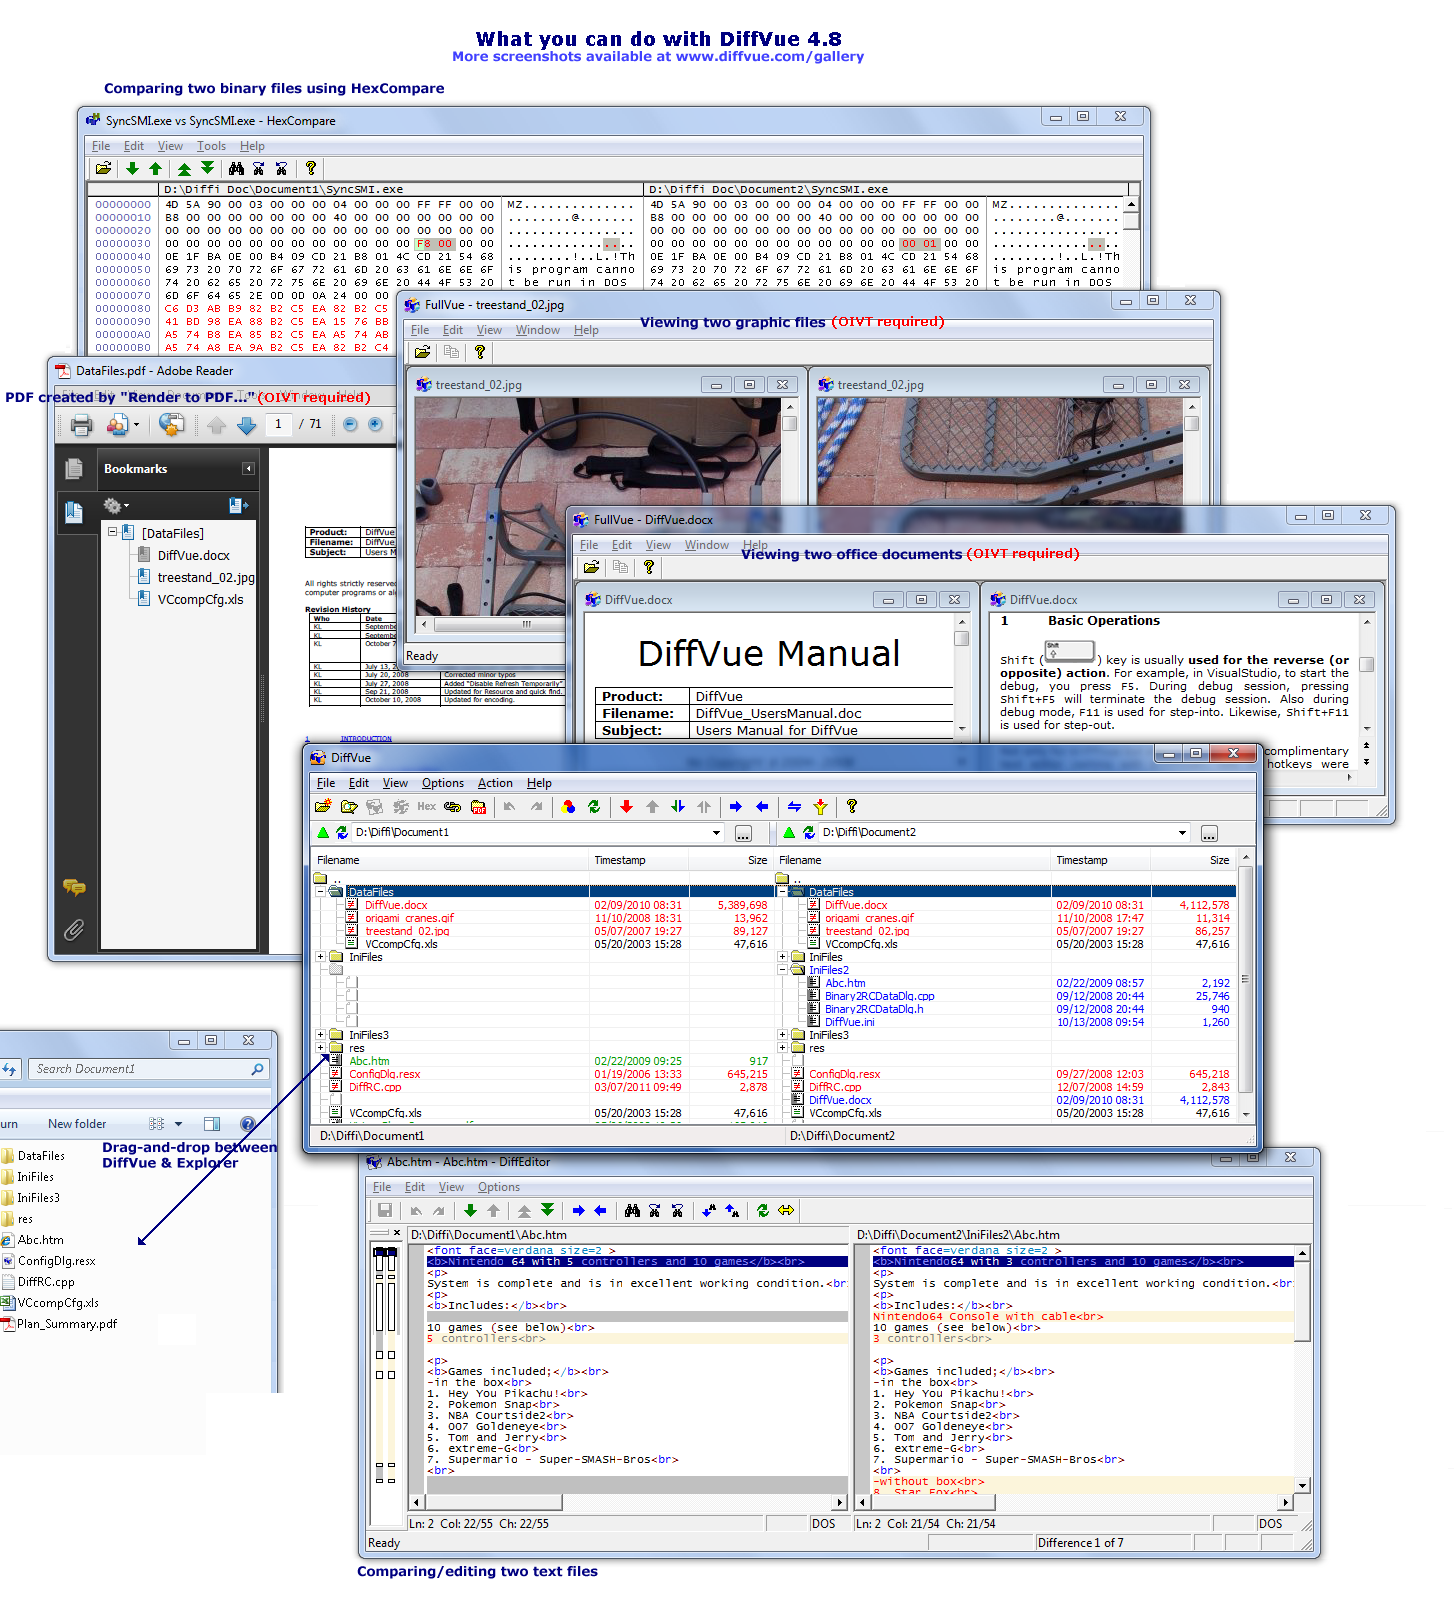 DiffVue 4.9.1.228 software screenshot